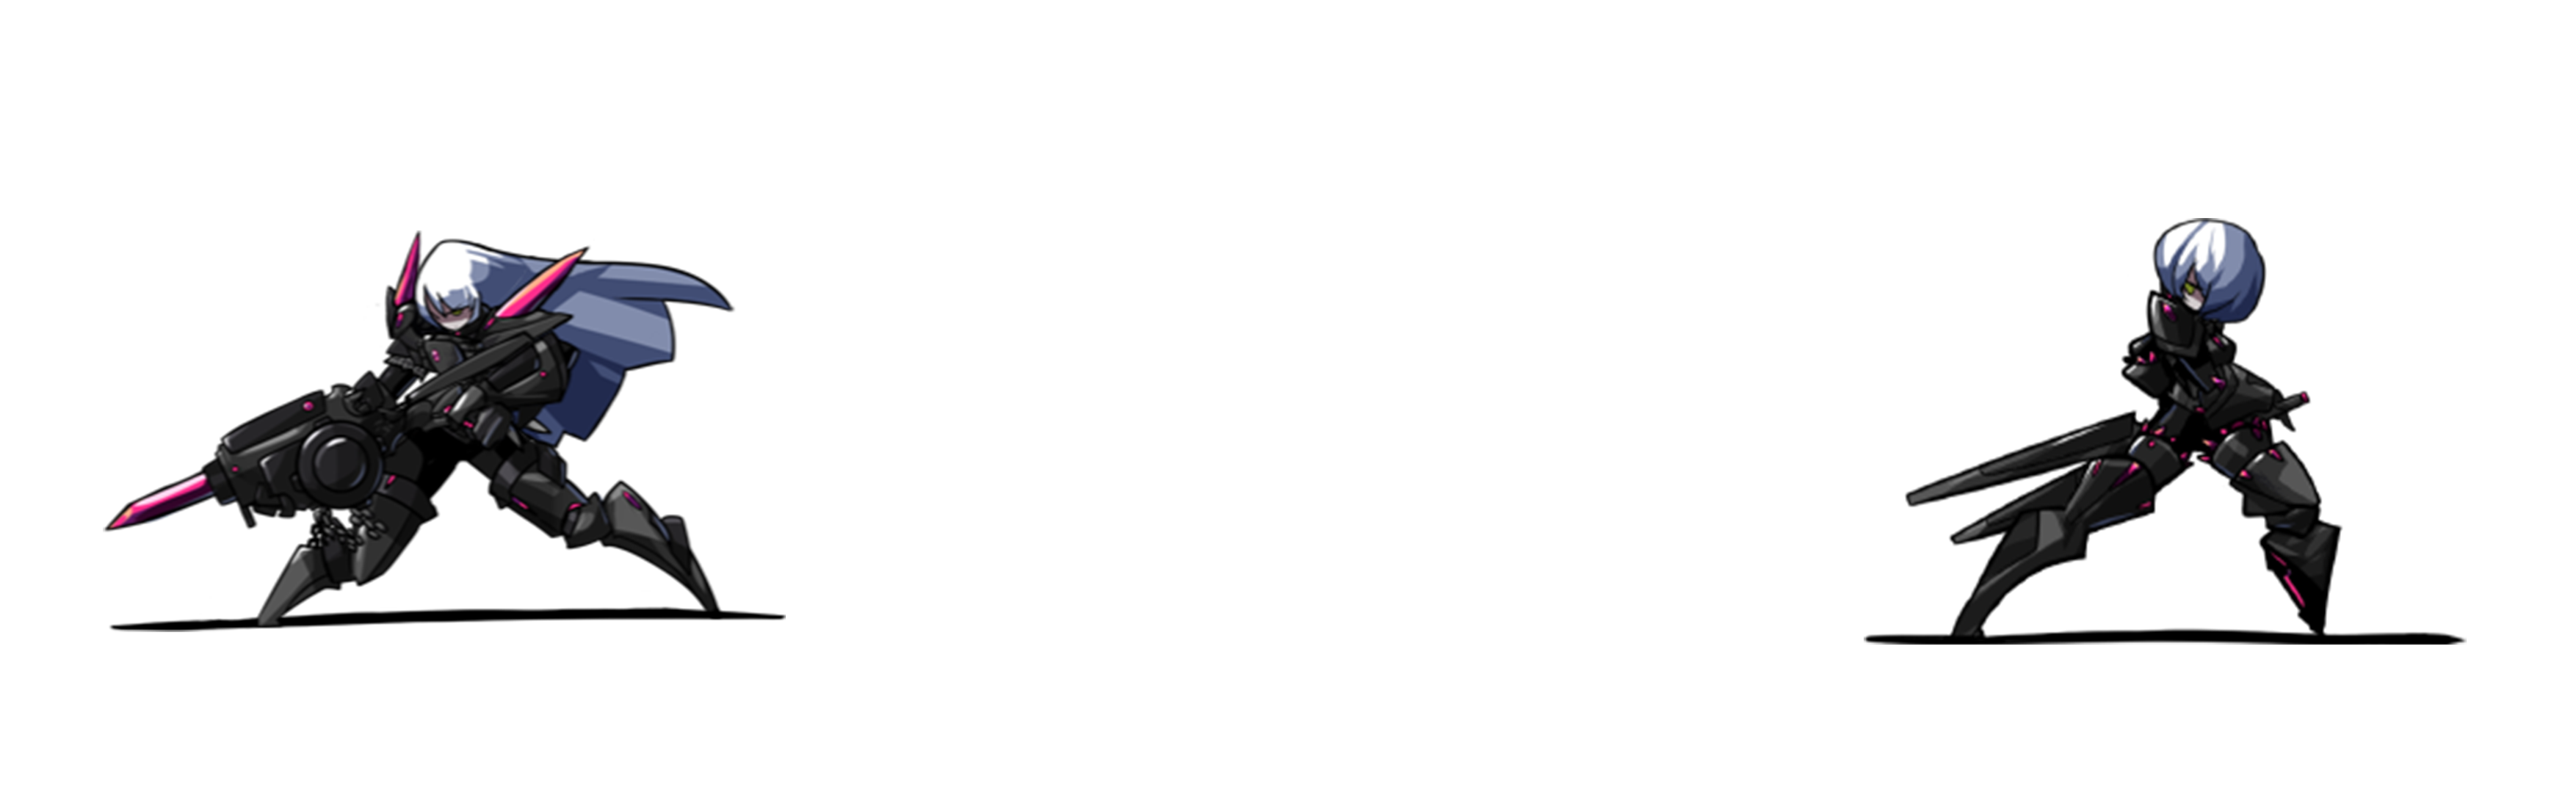 The Hero